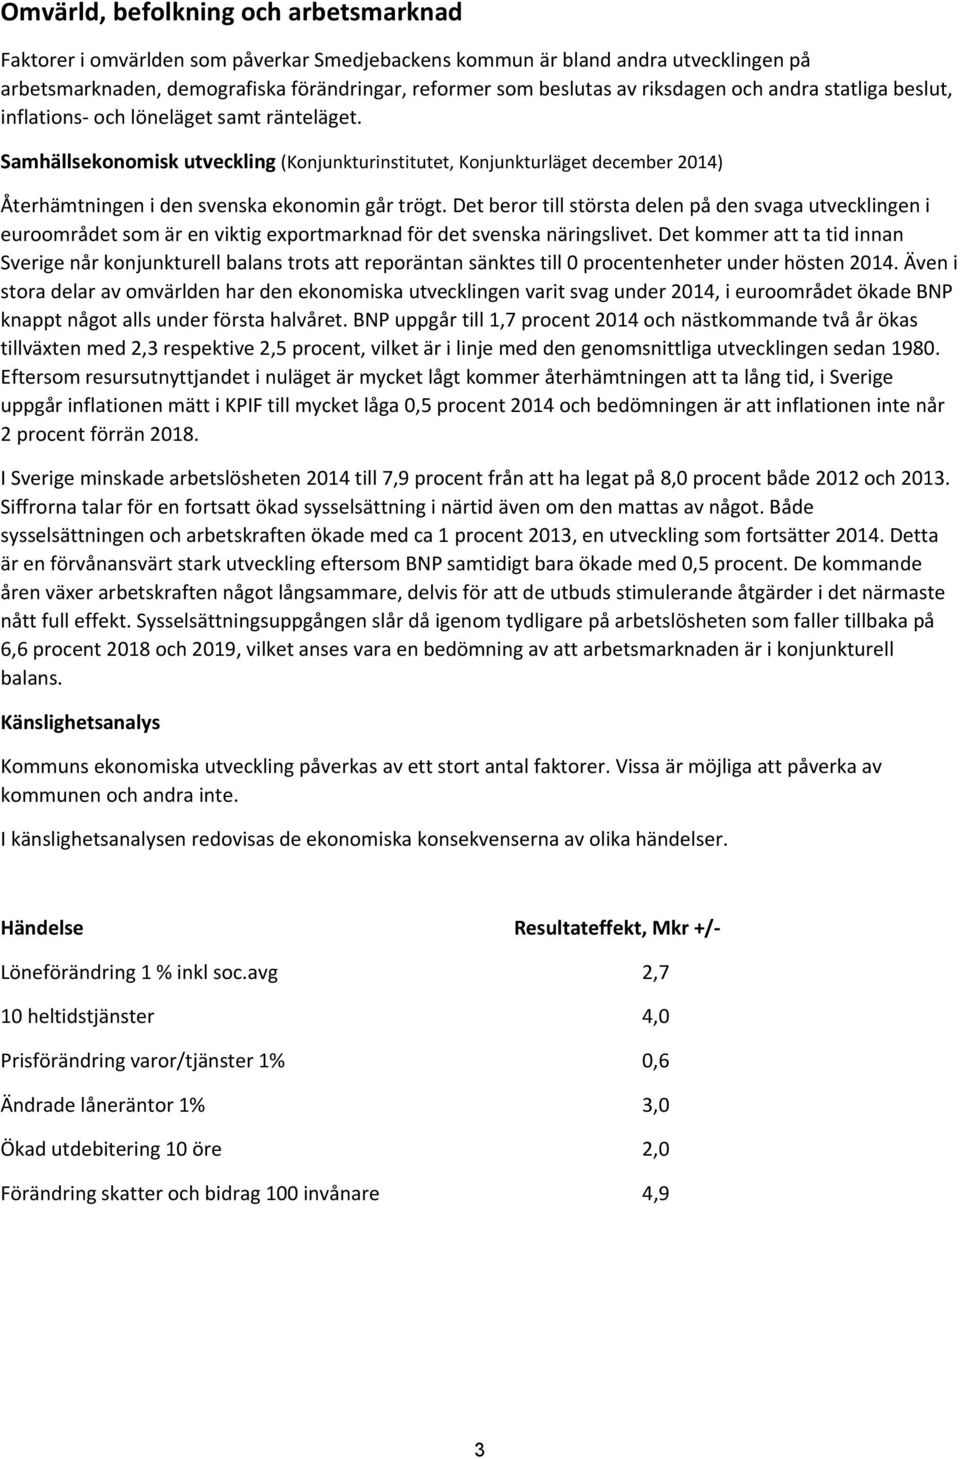 Samhällsekonomisk utveckling (Konjunkturinstitutet, Konjunkturläget december 2014) Återhämtningen i den svenska ekonomin går trögt.